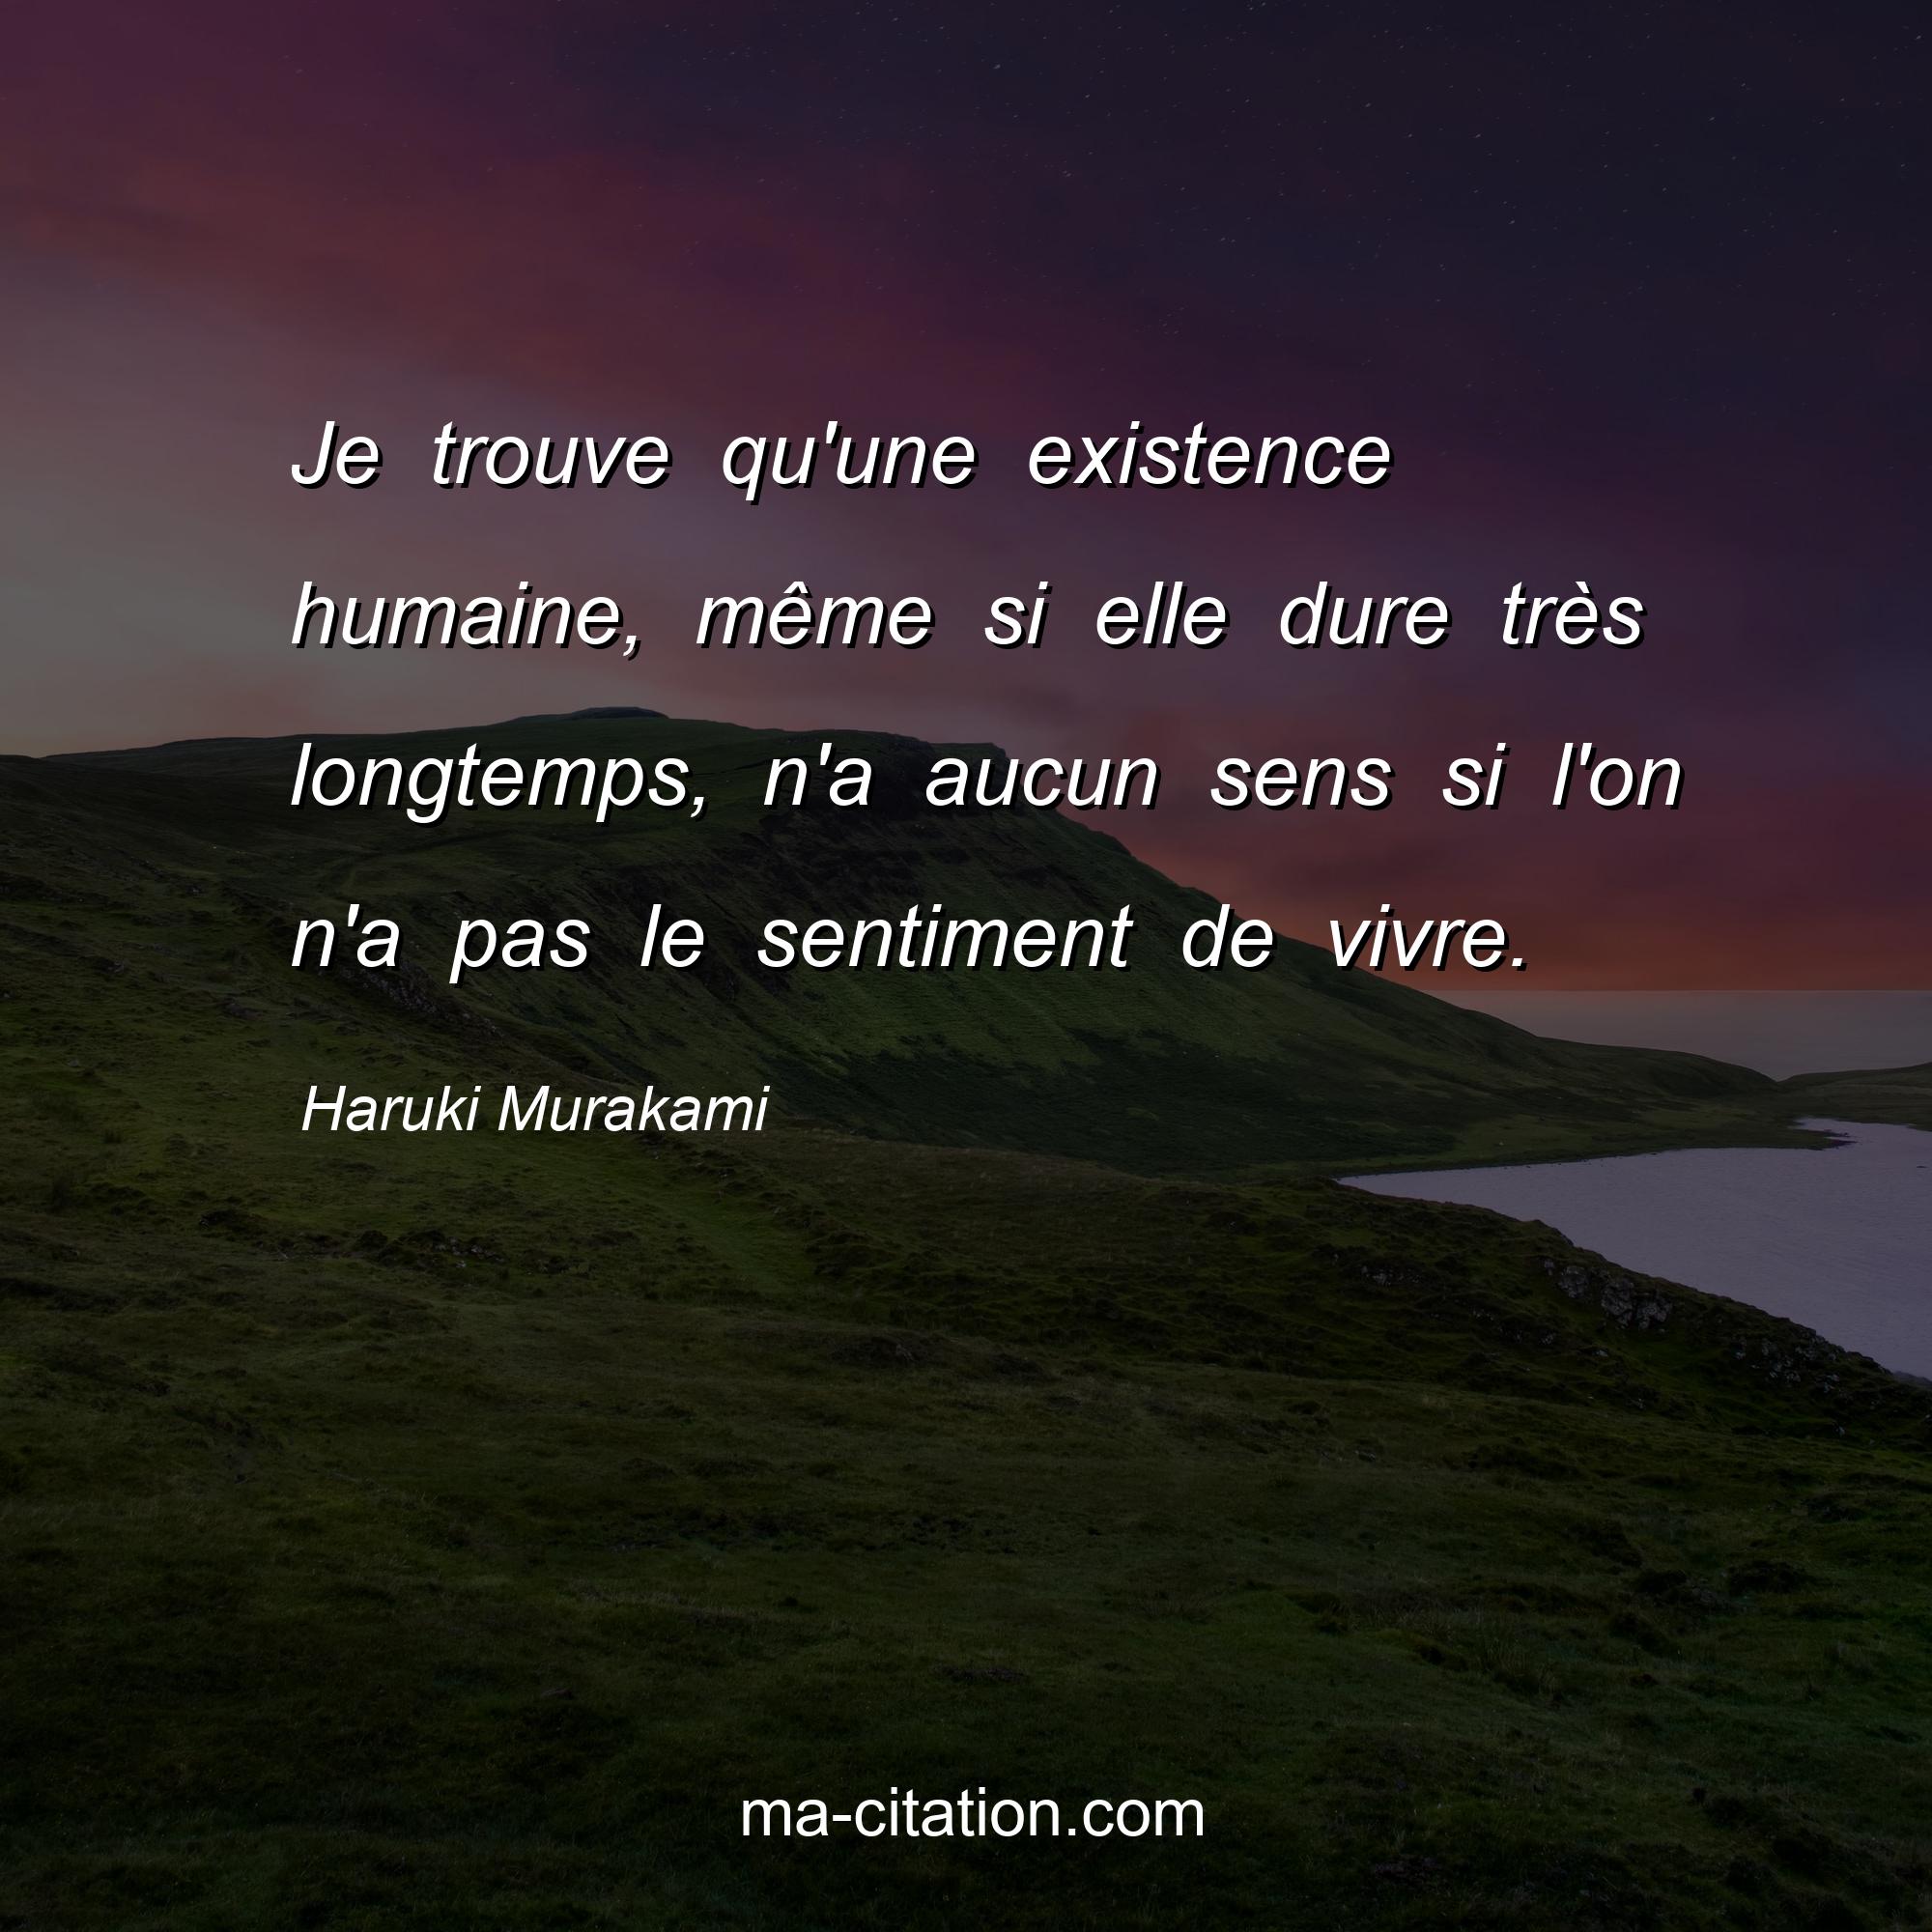 Haruki Murakami : Je trouve qu'une existence humaine, même si elle dure très longtemps, n'a aucun sens si l'on n'a pas le sentiment de vivre.